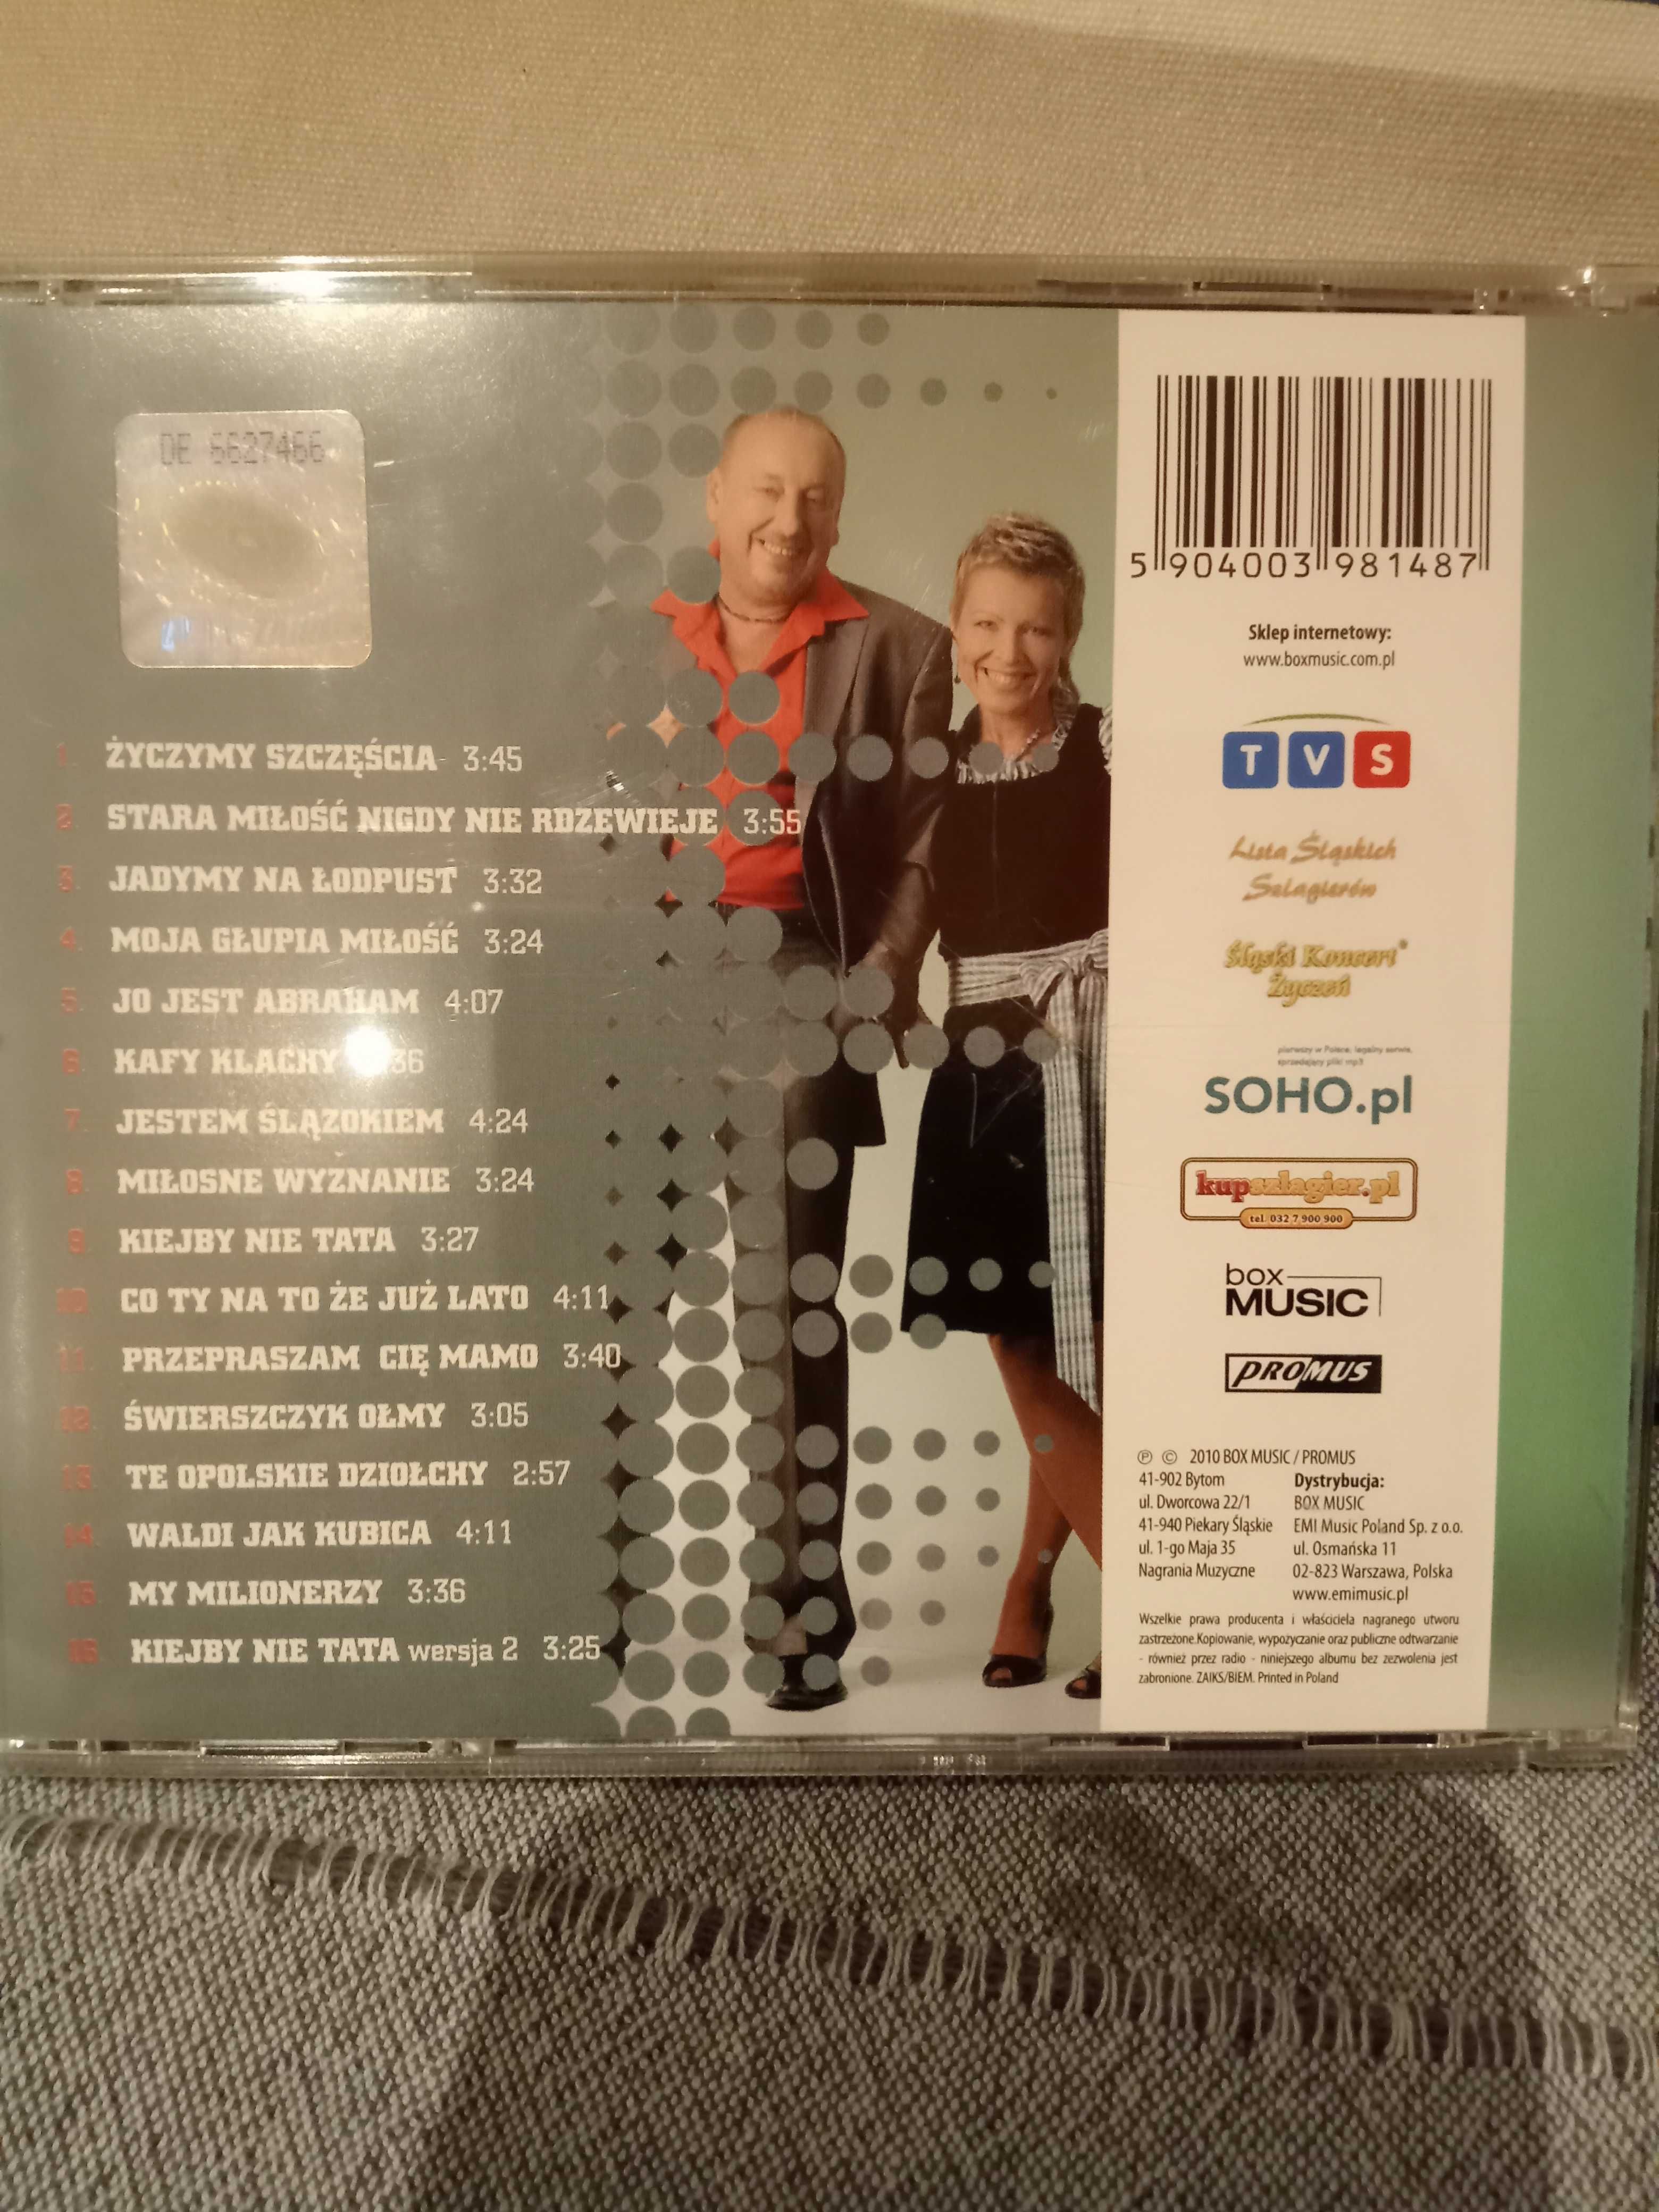 Duo Fenix płyta CD Spełnienie